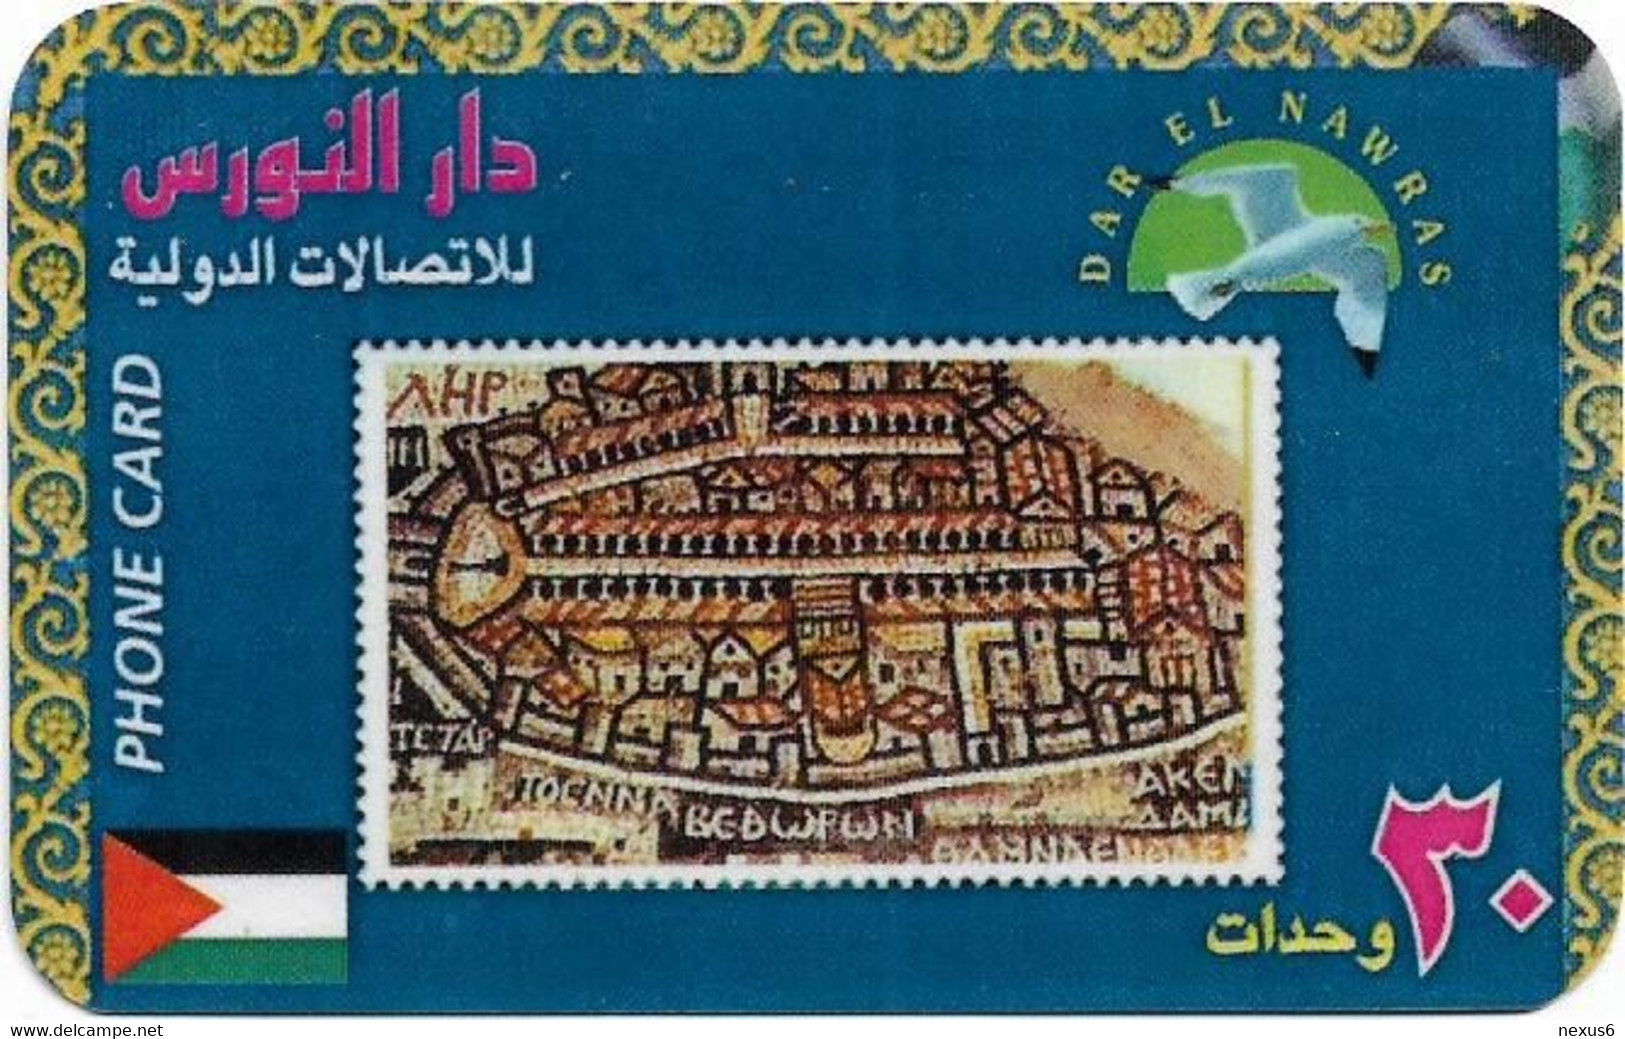 Palestine - Dar El Nawras - Stamps Fake Series, Stamp #10 - Palestine